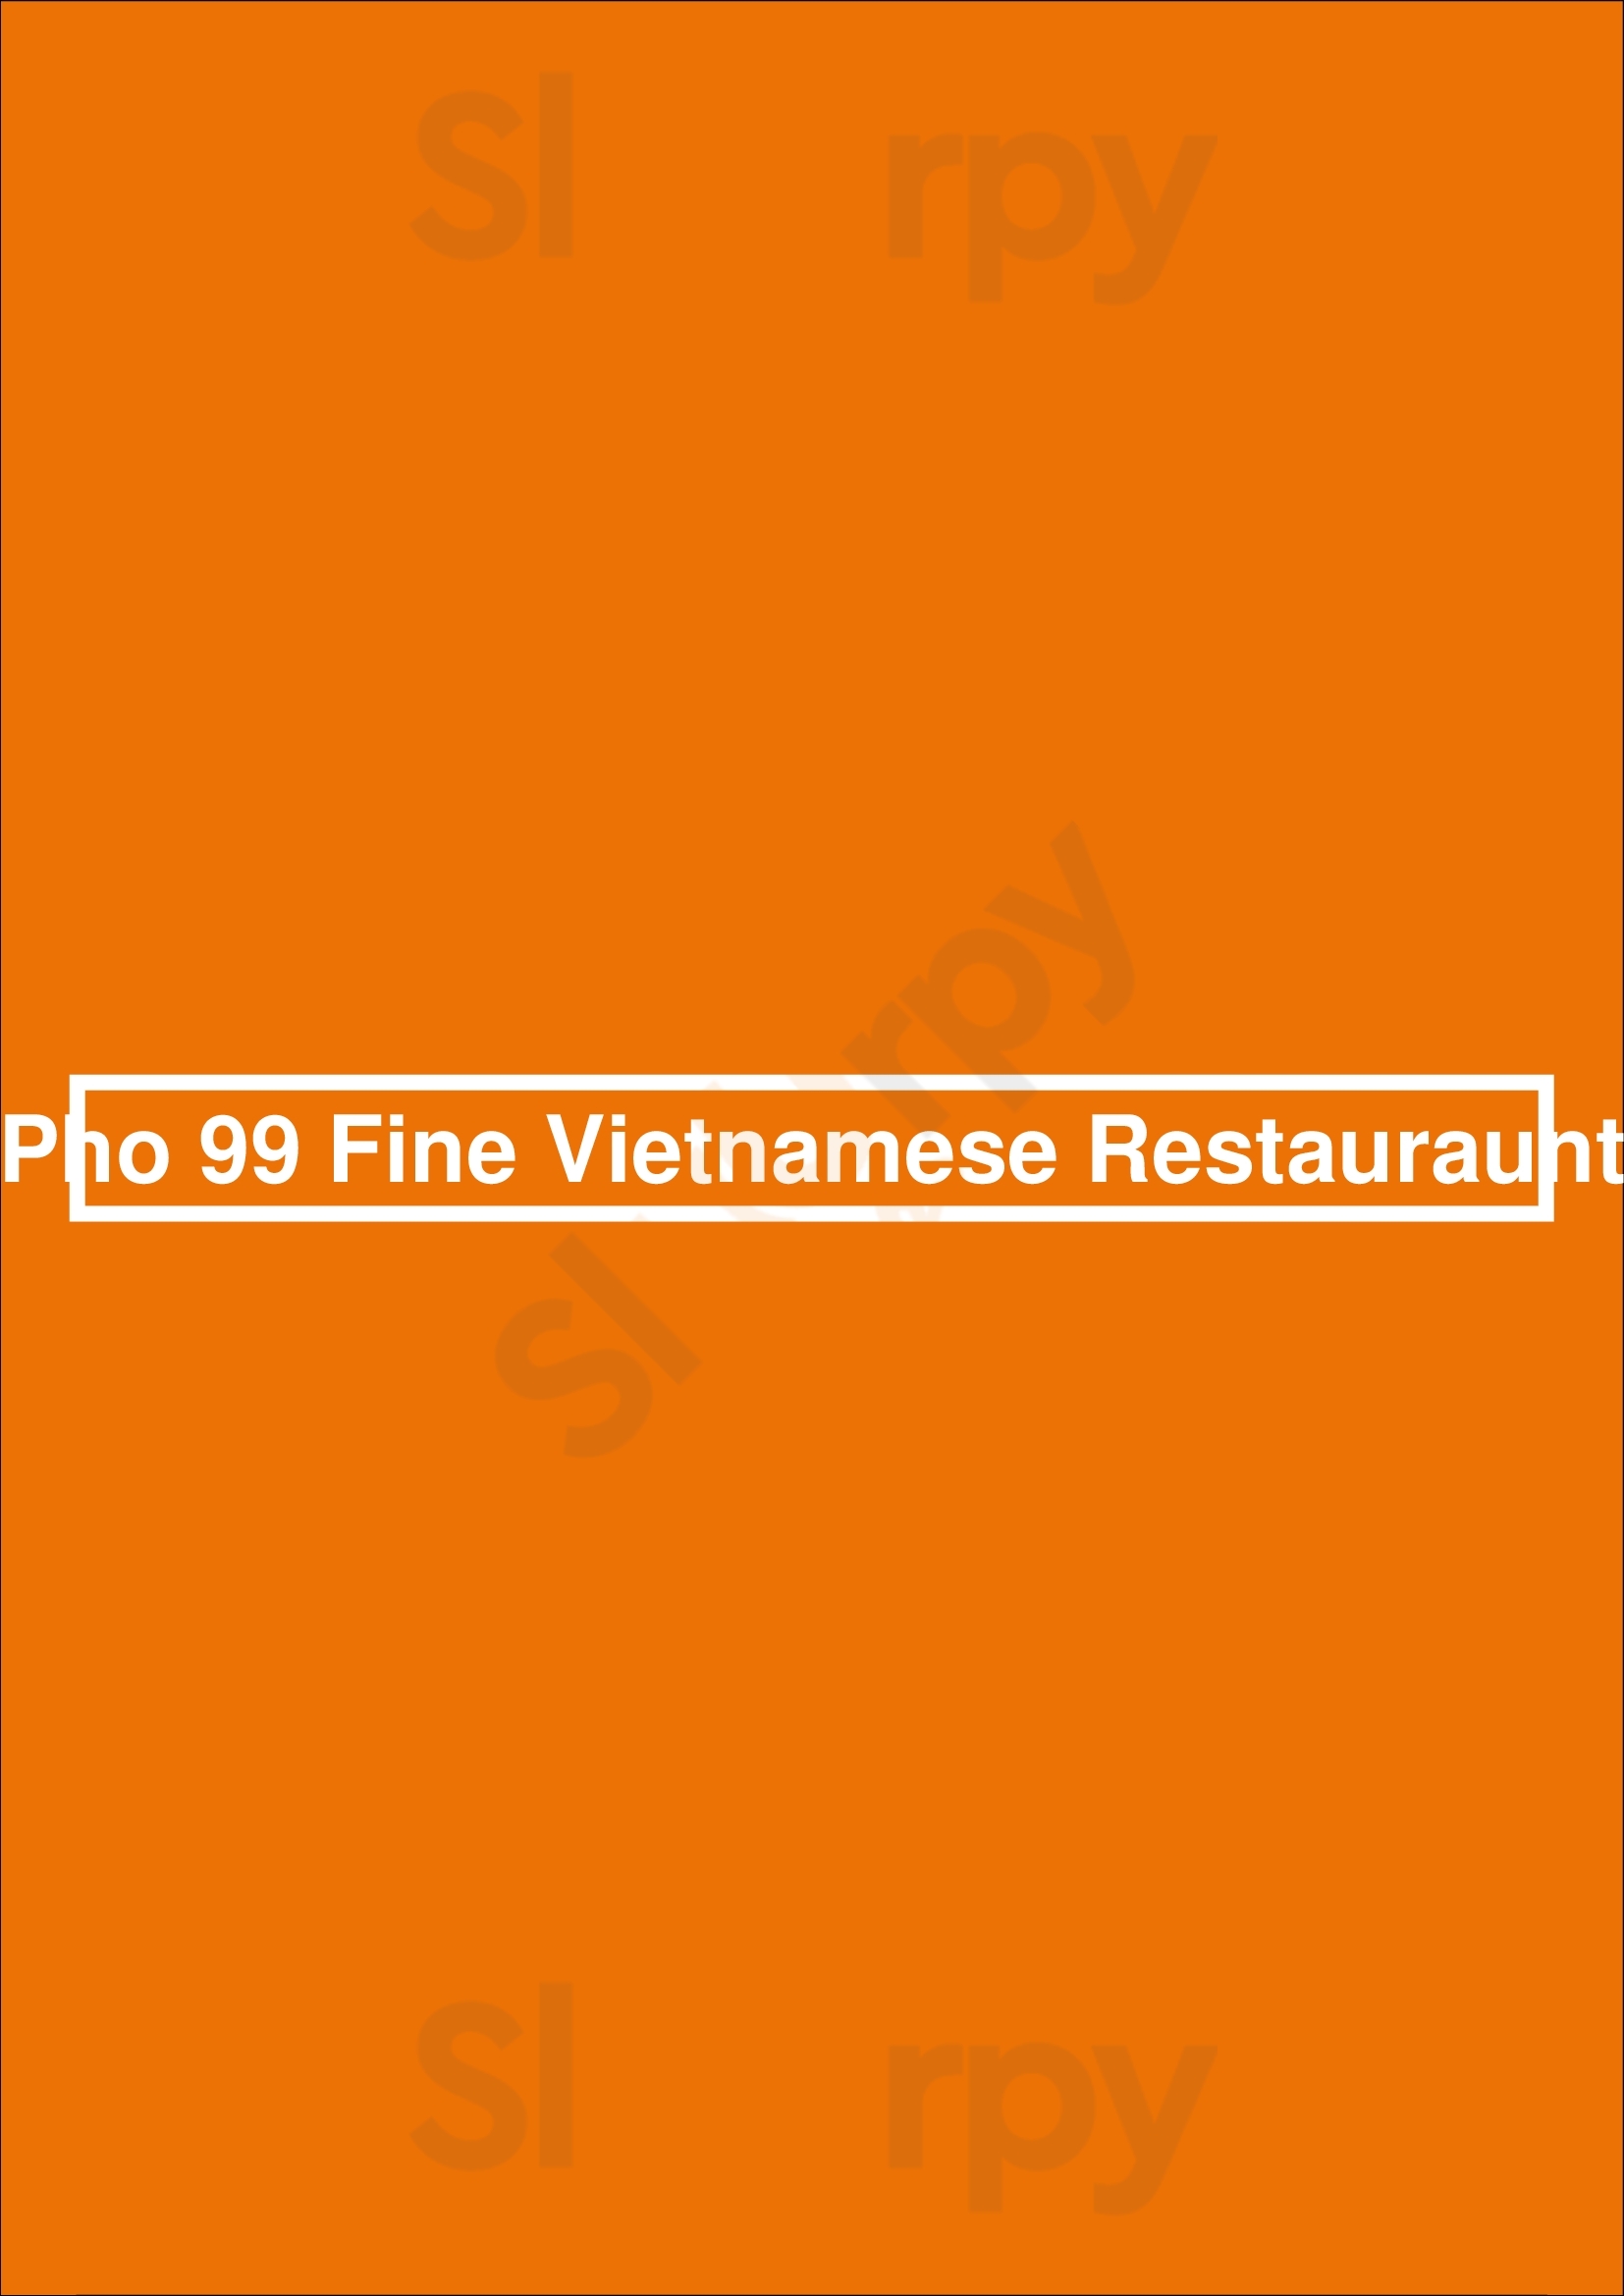 Pho 99 Fine Vietnamese Restauraunt Markham Menu - 1